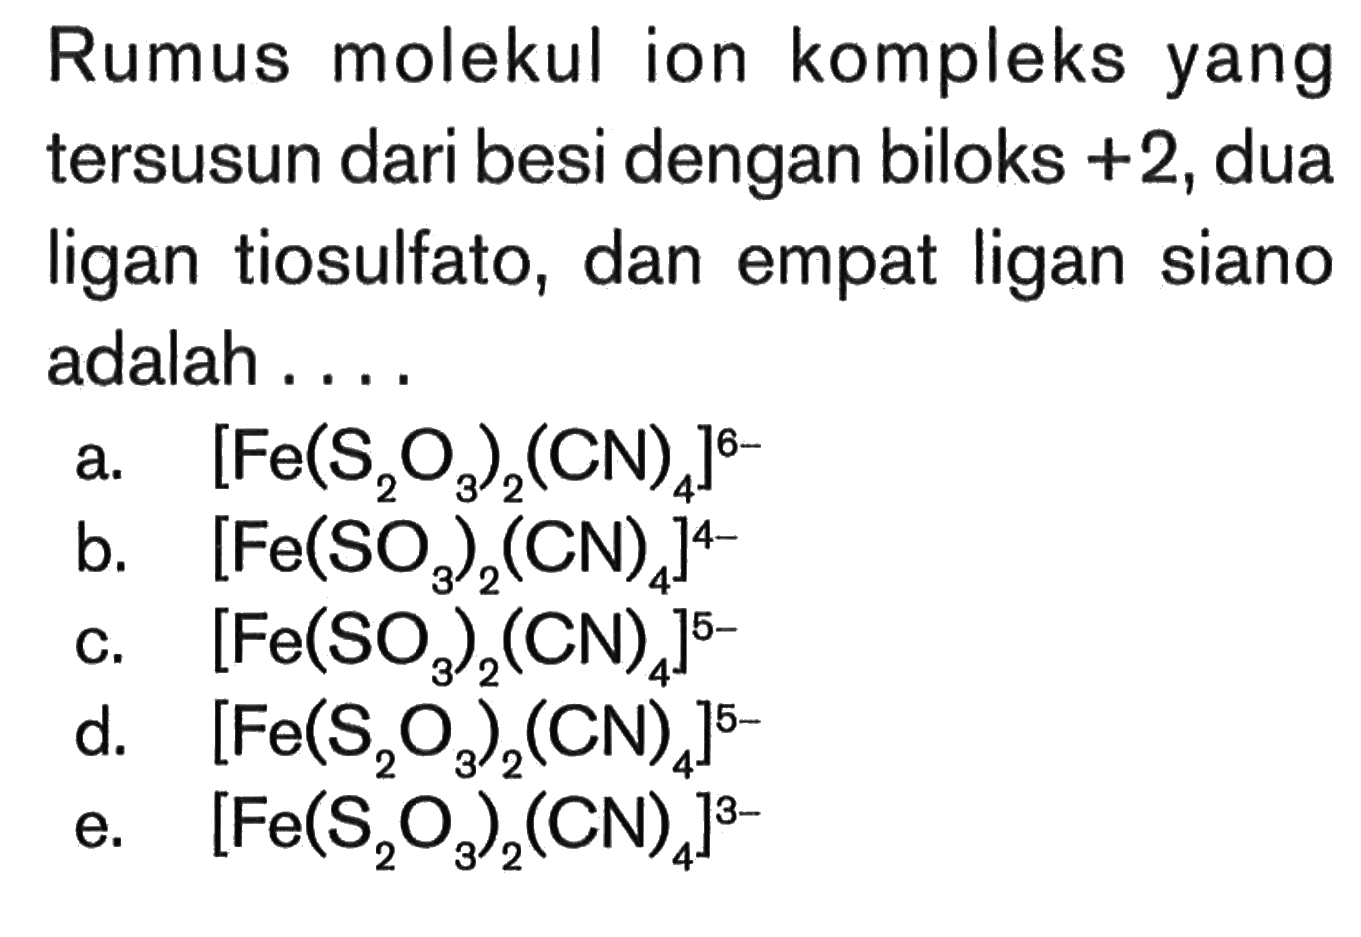 Rumus molekul ion kompleks yang tersusun dari besi dengan biloks +2, dua ligan tiosulfato, dan empat ligan siano adalah ...